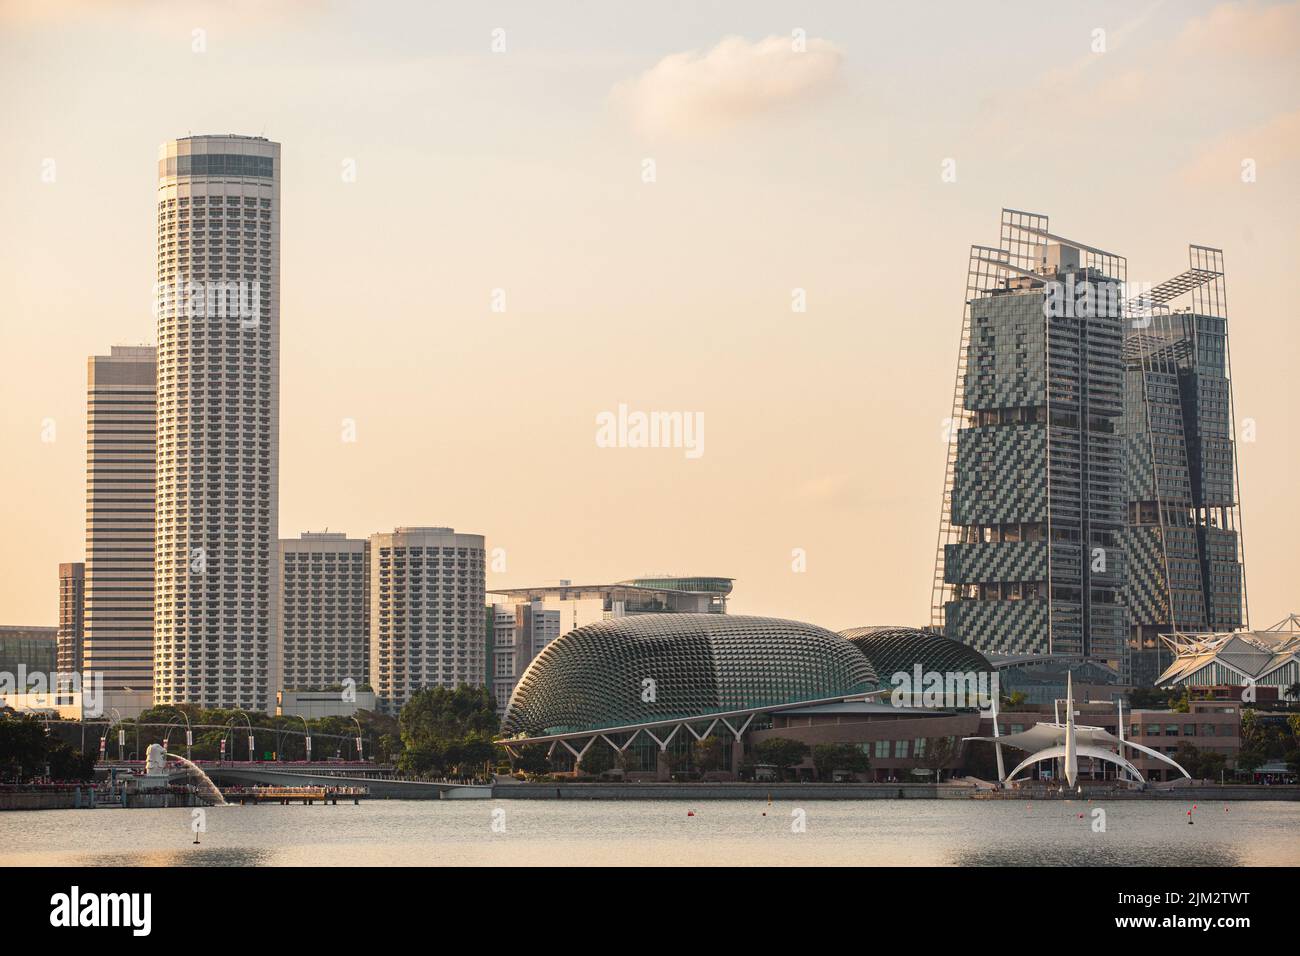 Singapour une économie de marché très développée doit son succès en grande partie à ses paramètres remarquablement ouverts et sans corruption. Banque D'Images